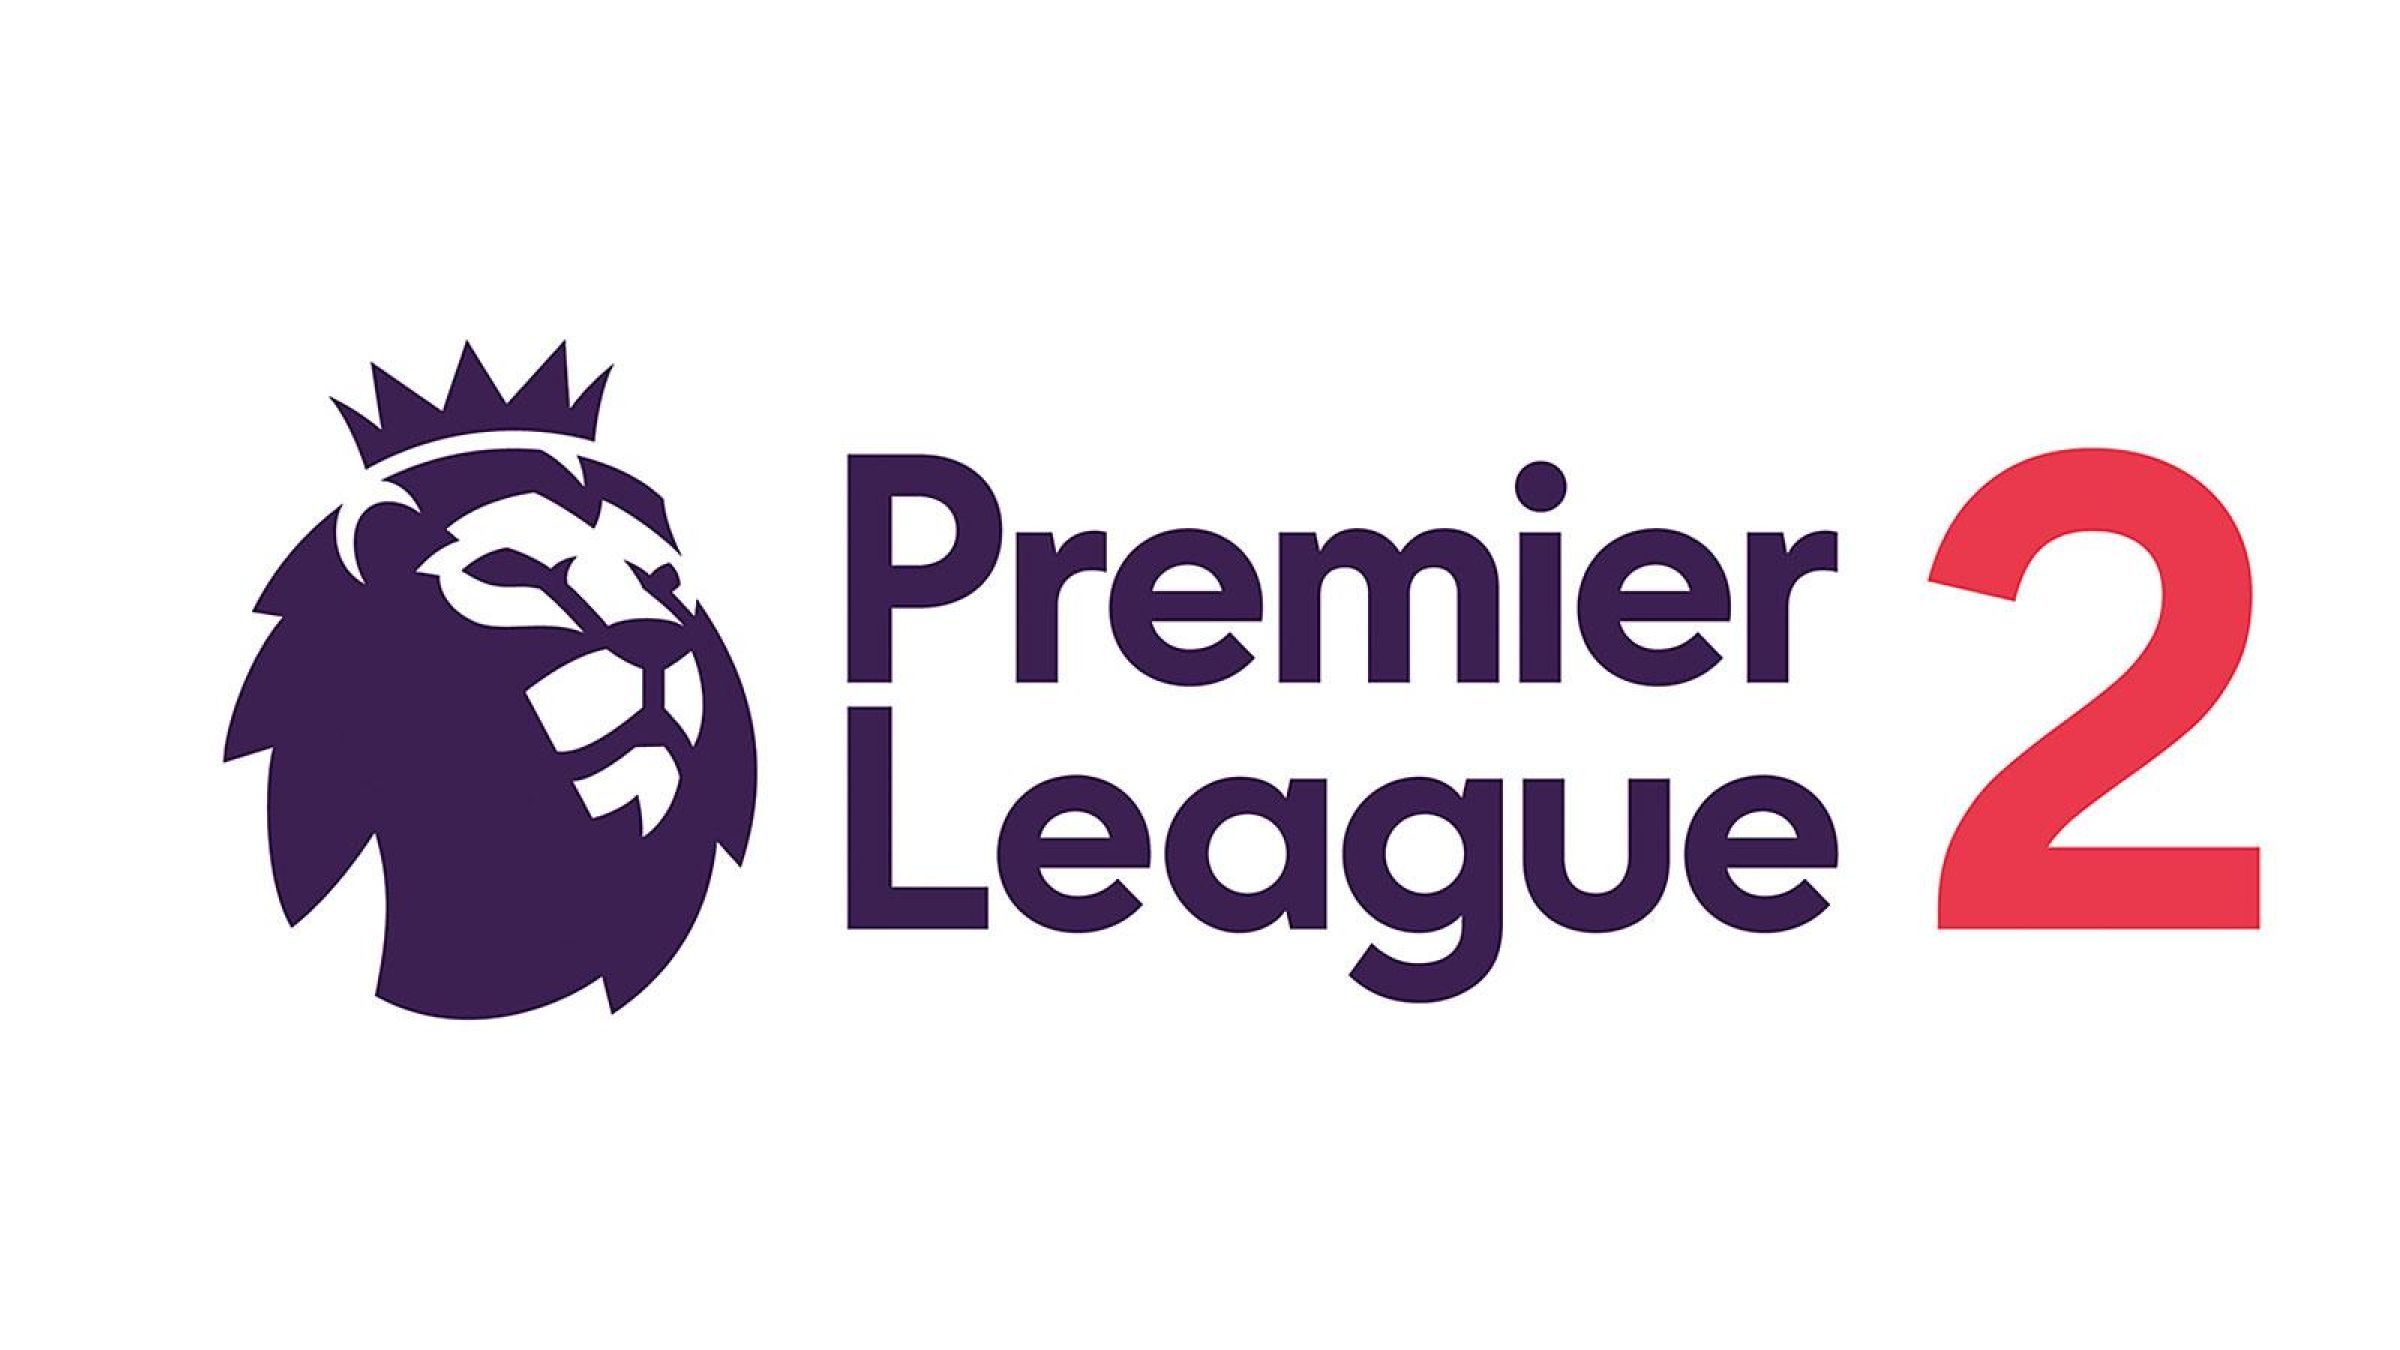 English premier league 2